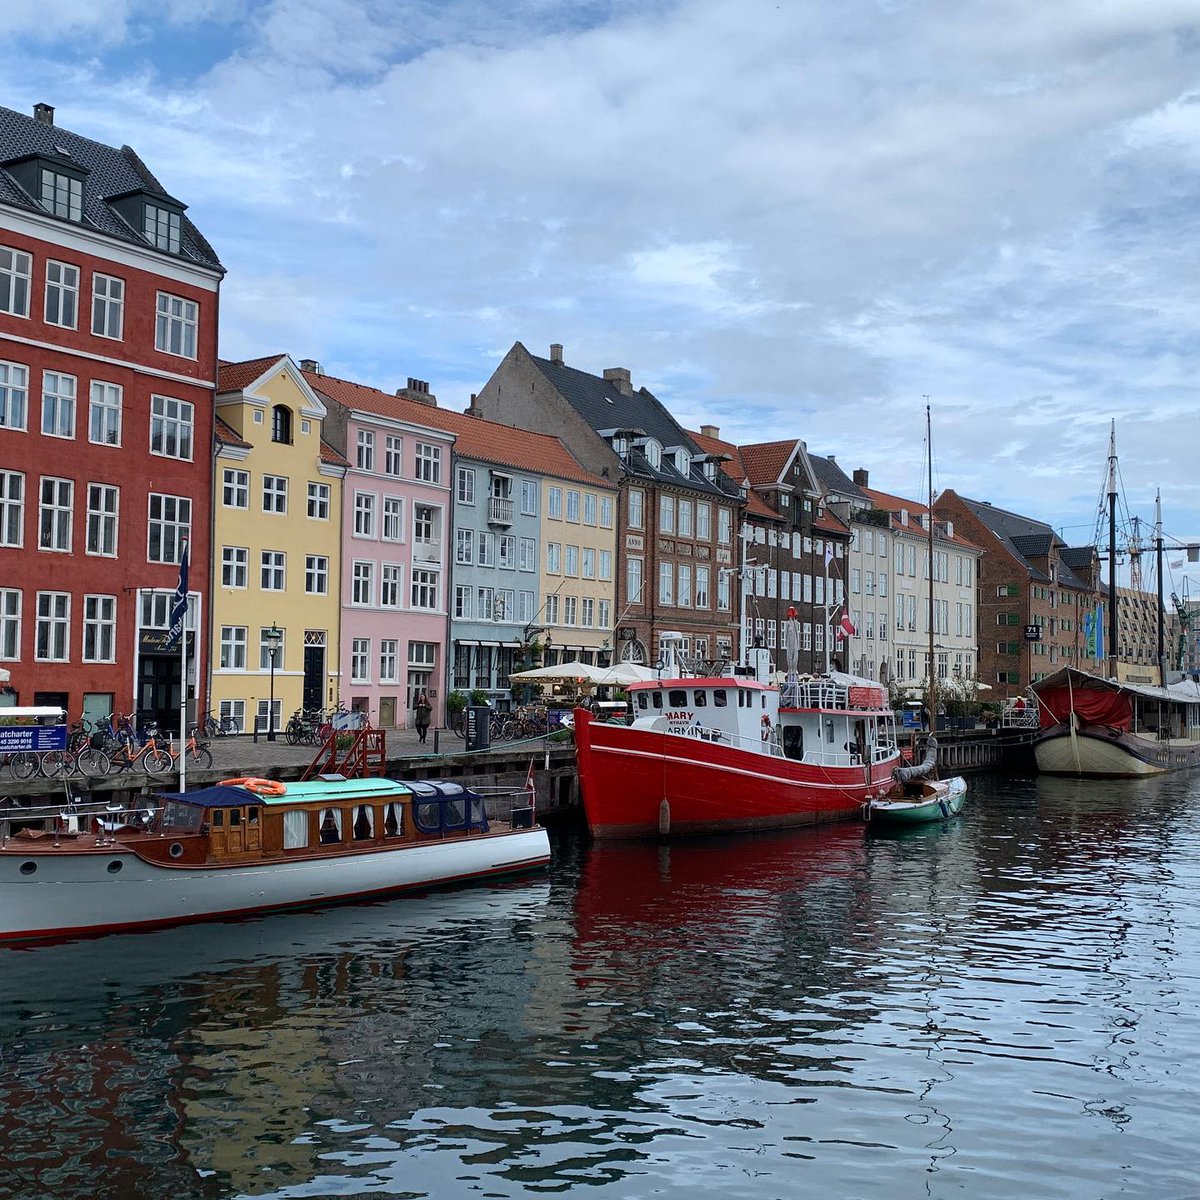 Inspirations for future artwork! Love the Copenhagen light!!! Grateful to travel again. #travelartist #harborview #copenhagen #oilpainter #emilyincopenhagen